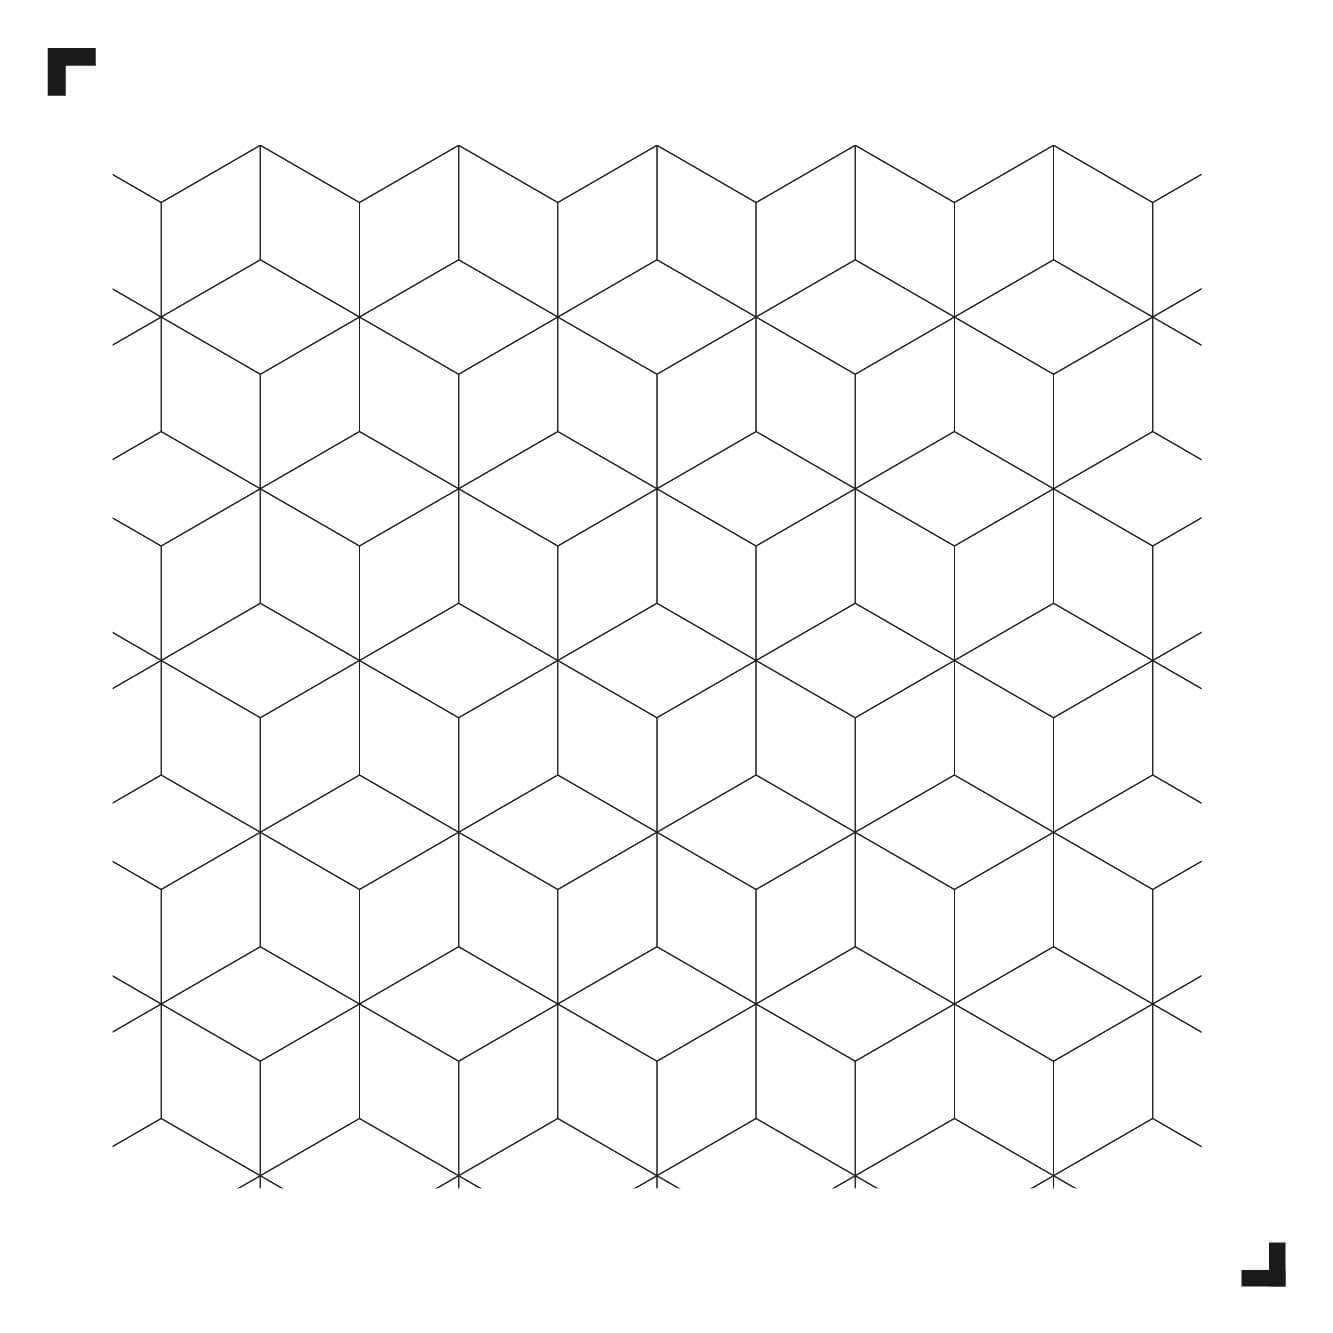 Schwarz-Weiß-Zeichnung des Big Diamond-Musters - Moduleo Moods - Luxury Vinyl Tiles - Creative flooring